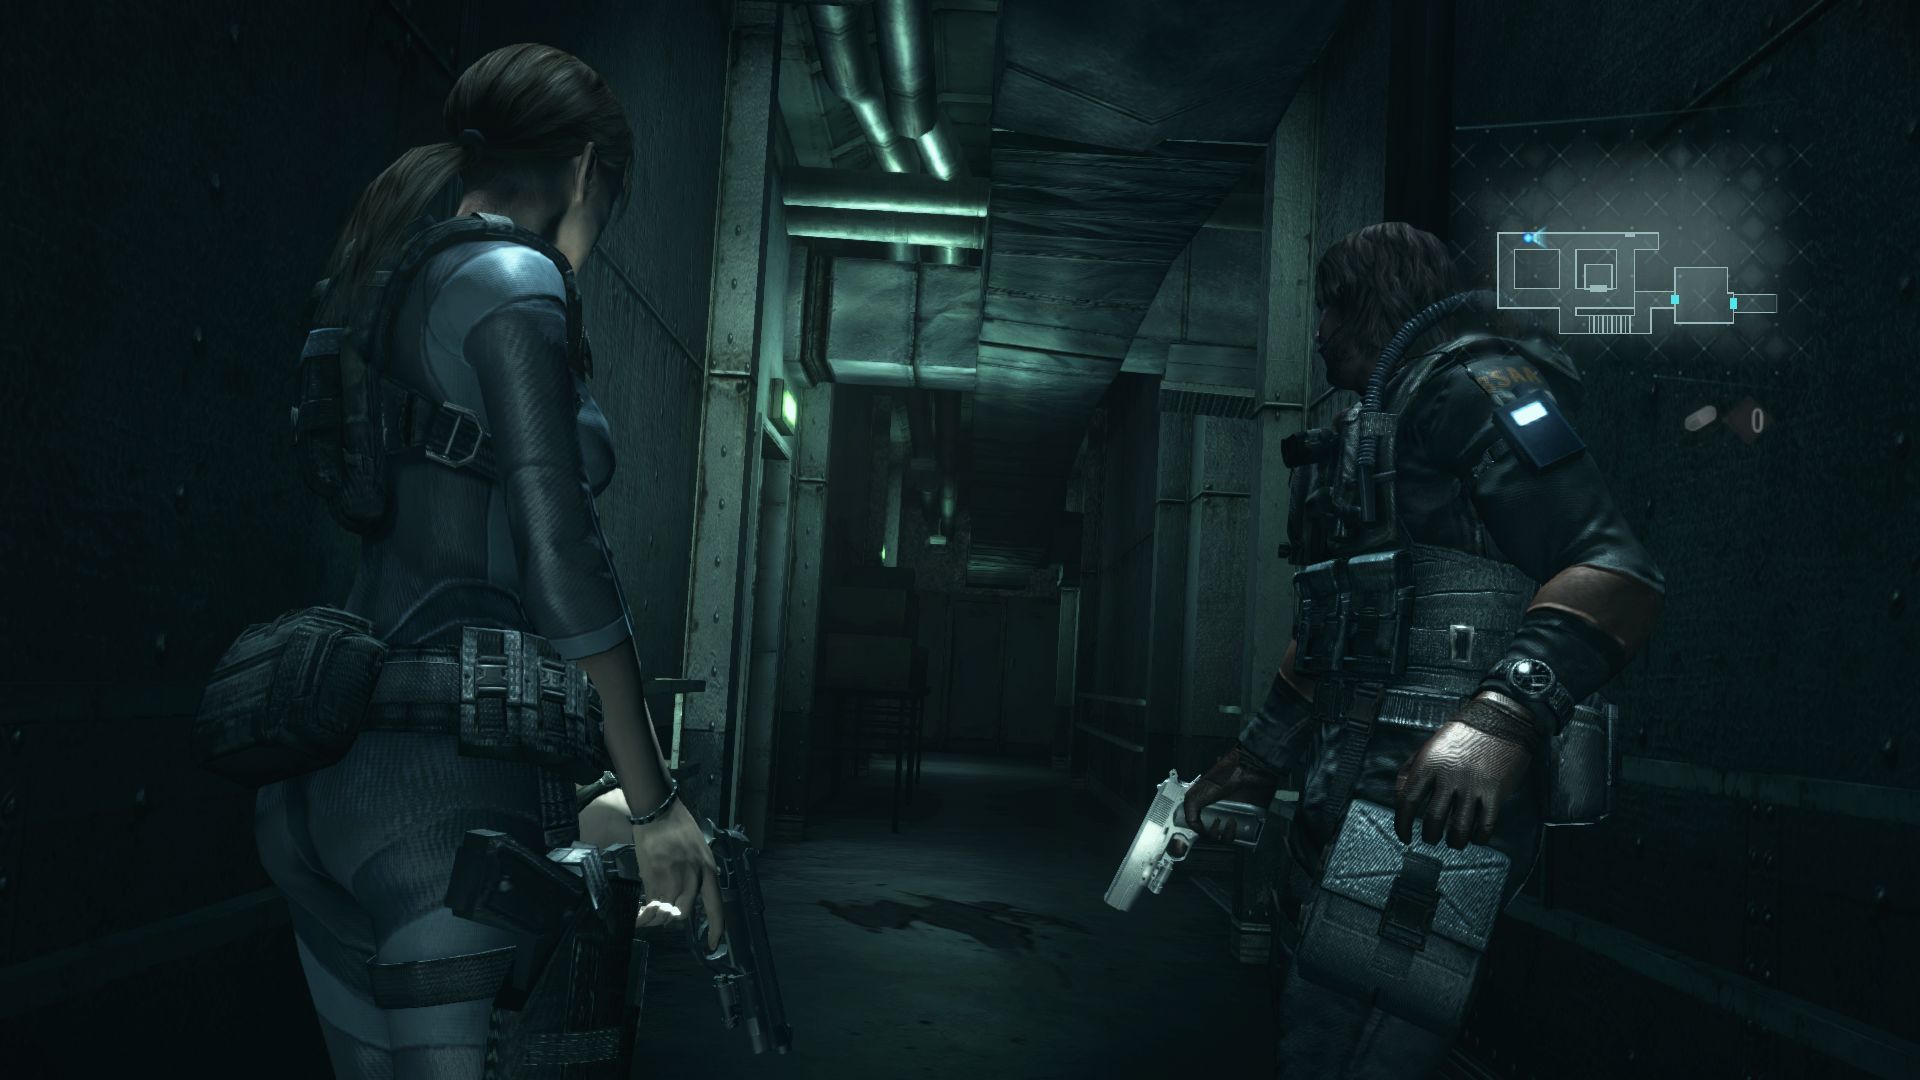 Immagine pubblicata in relazione al seguente contenuto: Requisiti di sistema e screenshot di Resident Evil: Revelations | Nome immagine: news19283_Resident-Evil-Revelations-PC-screenshot_5.jpg